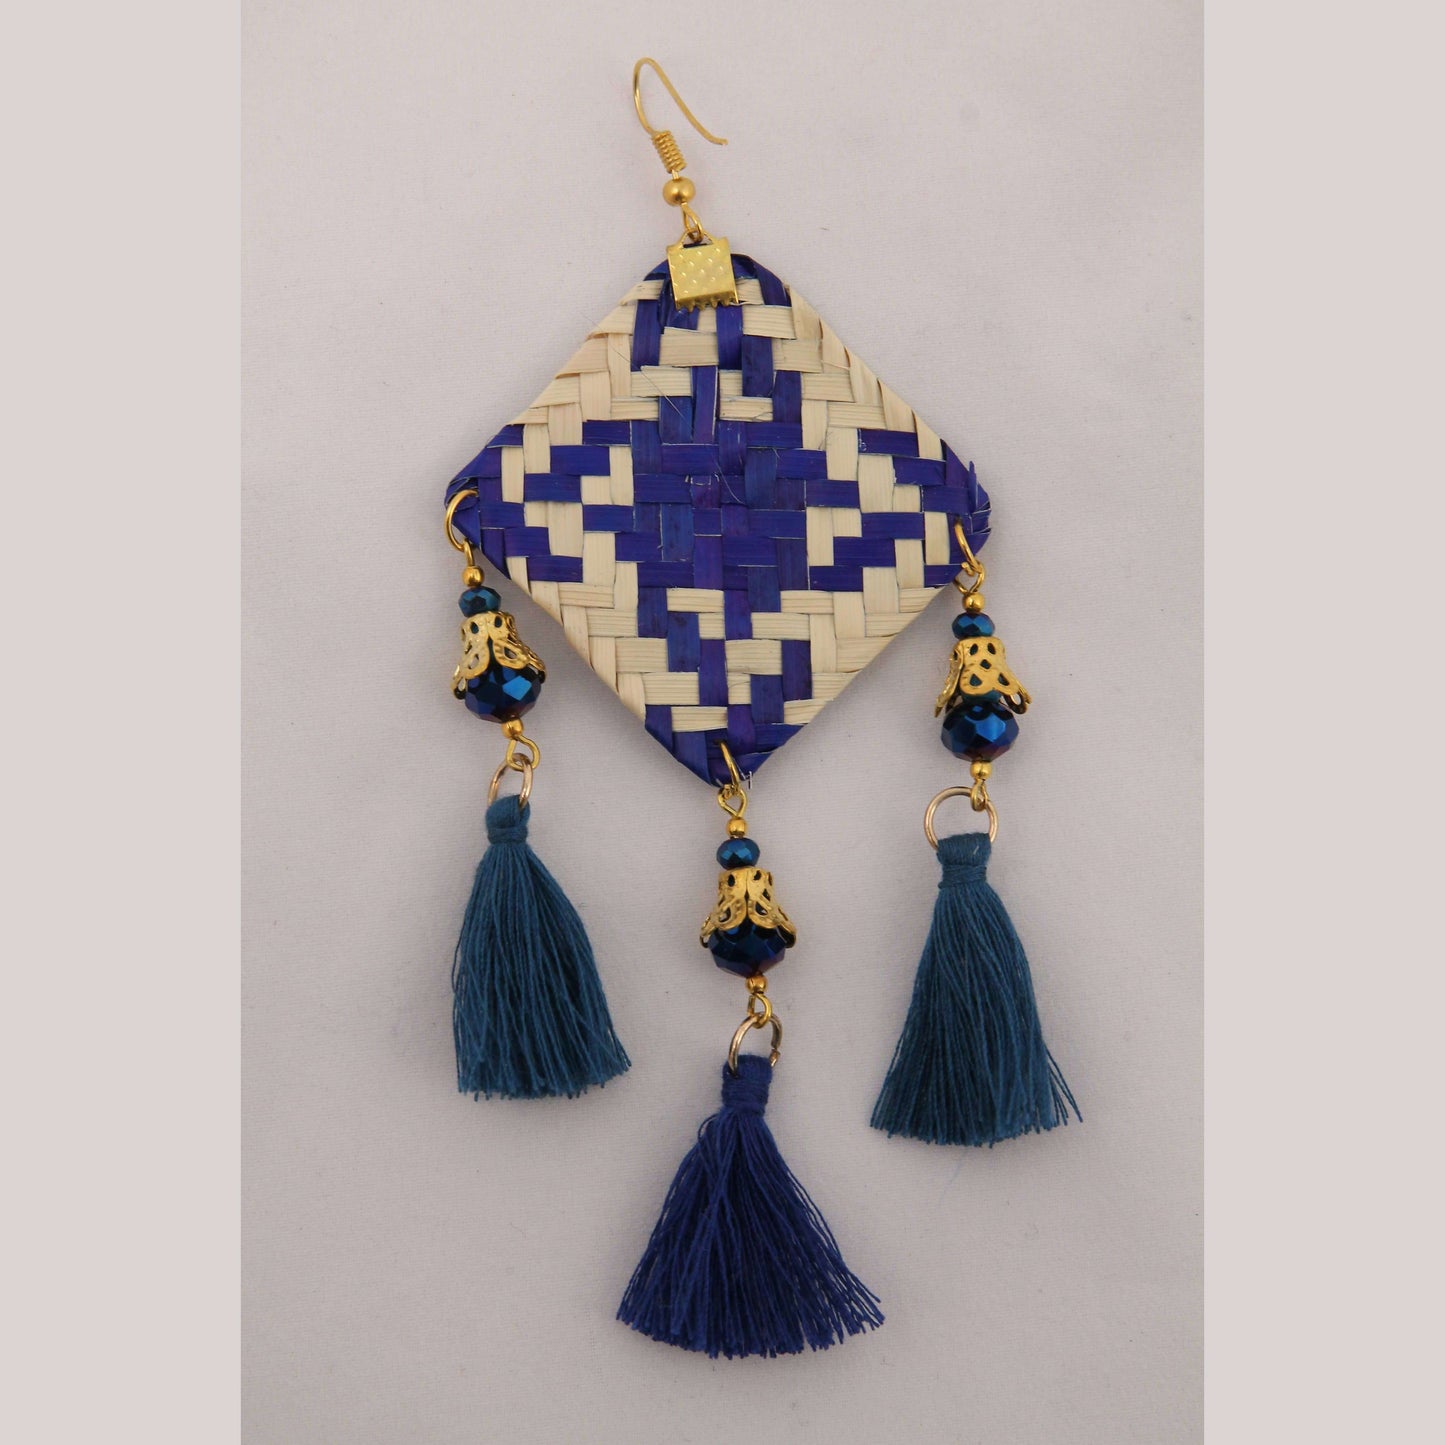 Hand Crafted Woven Palm Earrings Jewelry Mexican Folk Wearable Art Oaxaca Blue